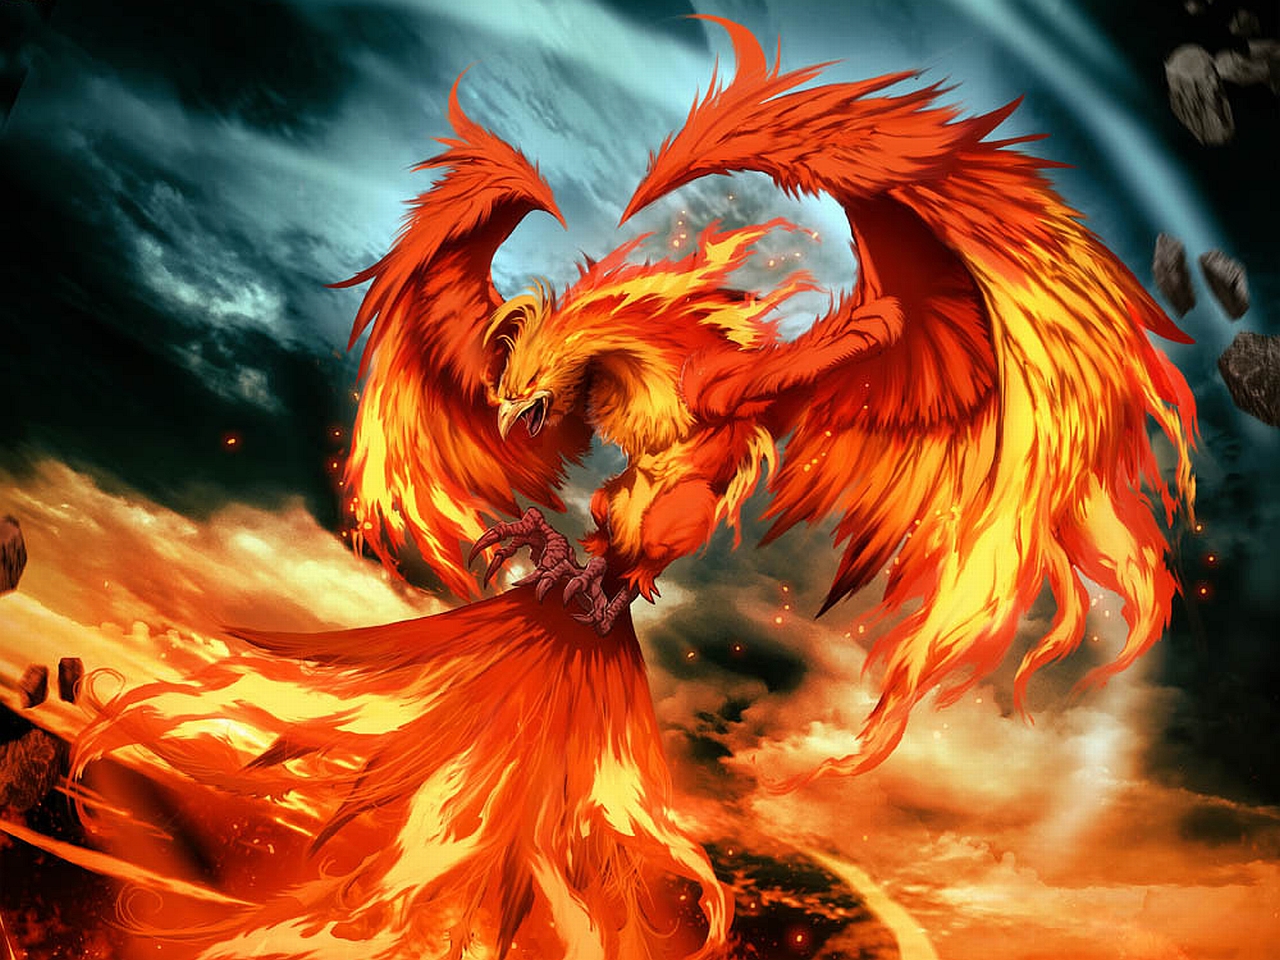 Fantasy Phoenix Picture by Gonzalo Ordóñez Arias